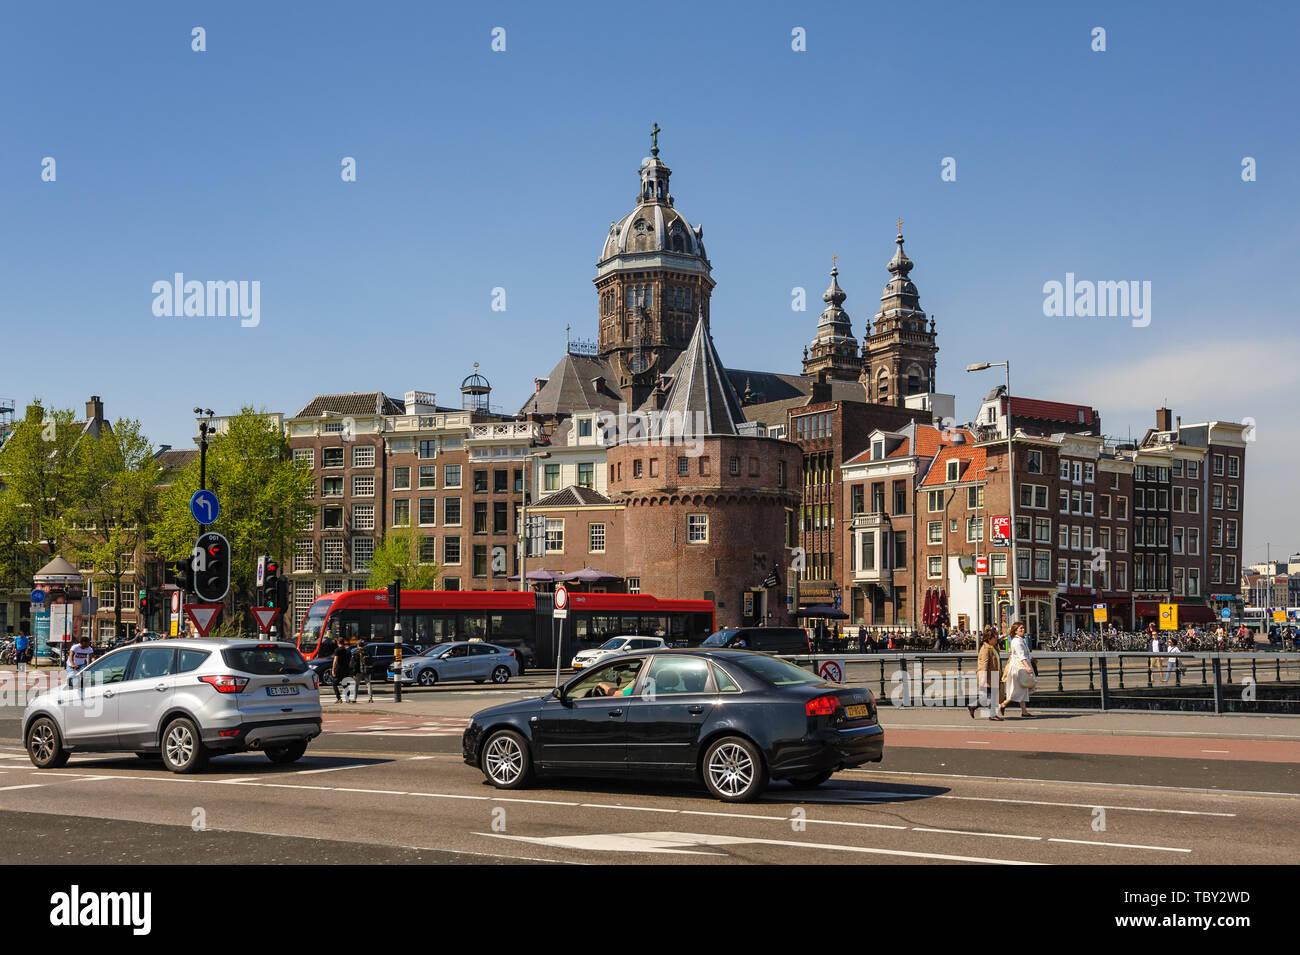 Ver a Amsterdam calles alrededor de la Estación Central. Foto de stock